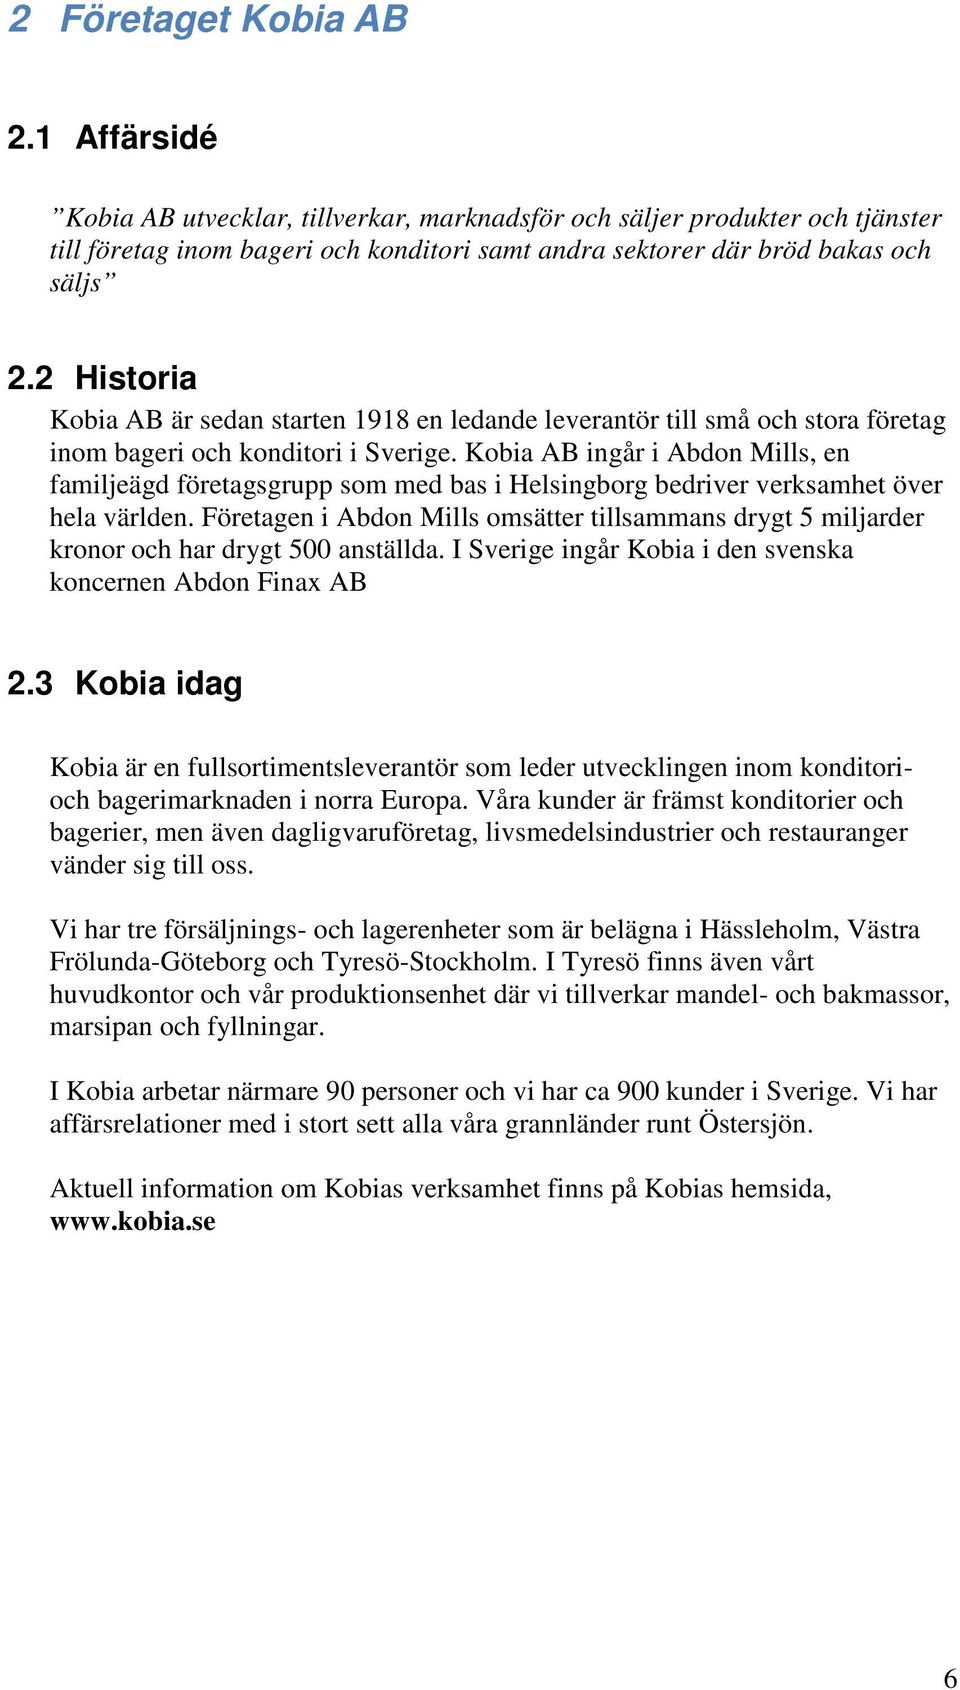 Kobia AB ingår i Abdon Mills, en familjeägd företagsgrupp som med bas i Helsingborg bedriver verksamhet över hela världen.